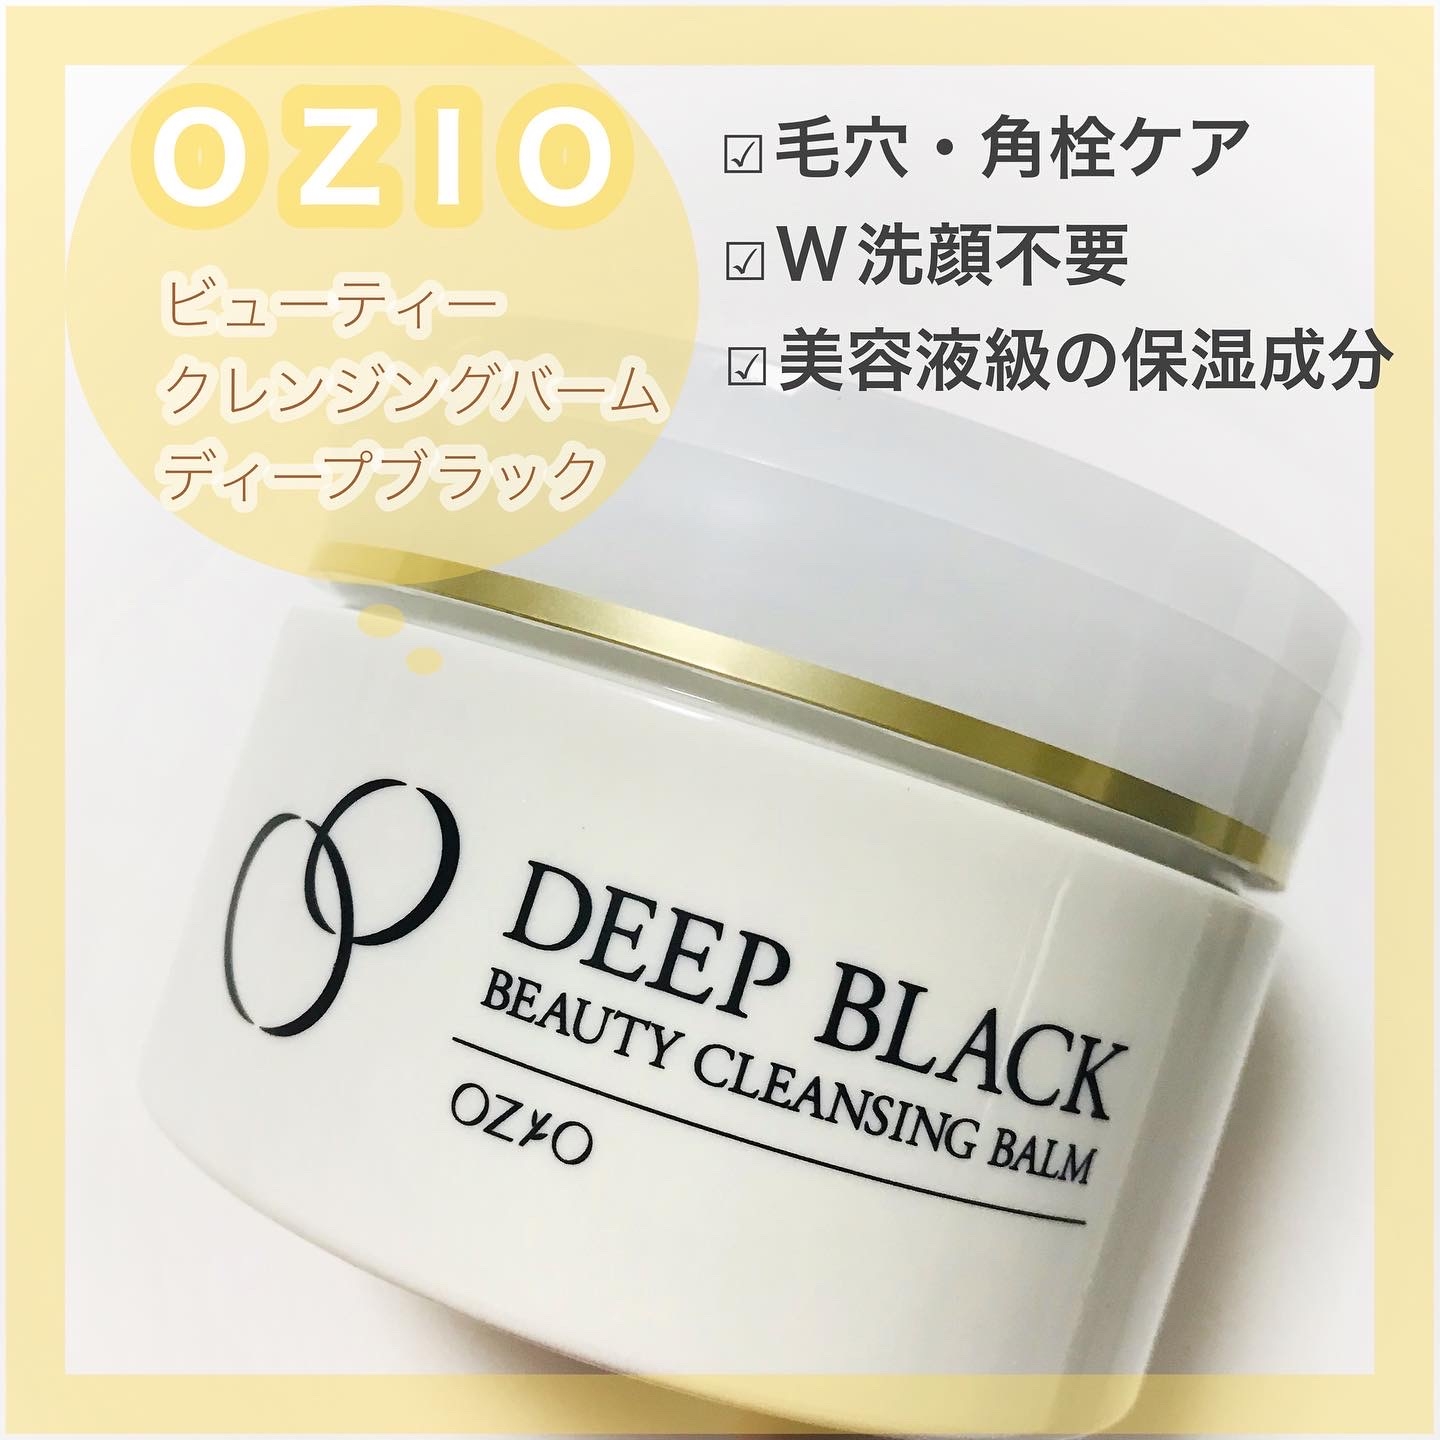 OZIO(オージオ) ビューティークレンジングバーム ディープブラックの良い点・メリットに関するありすさんの口コミ画像1